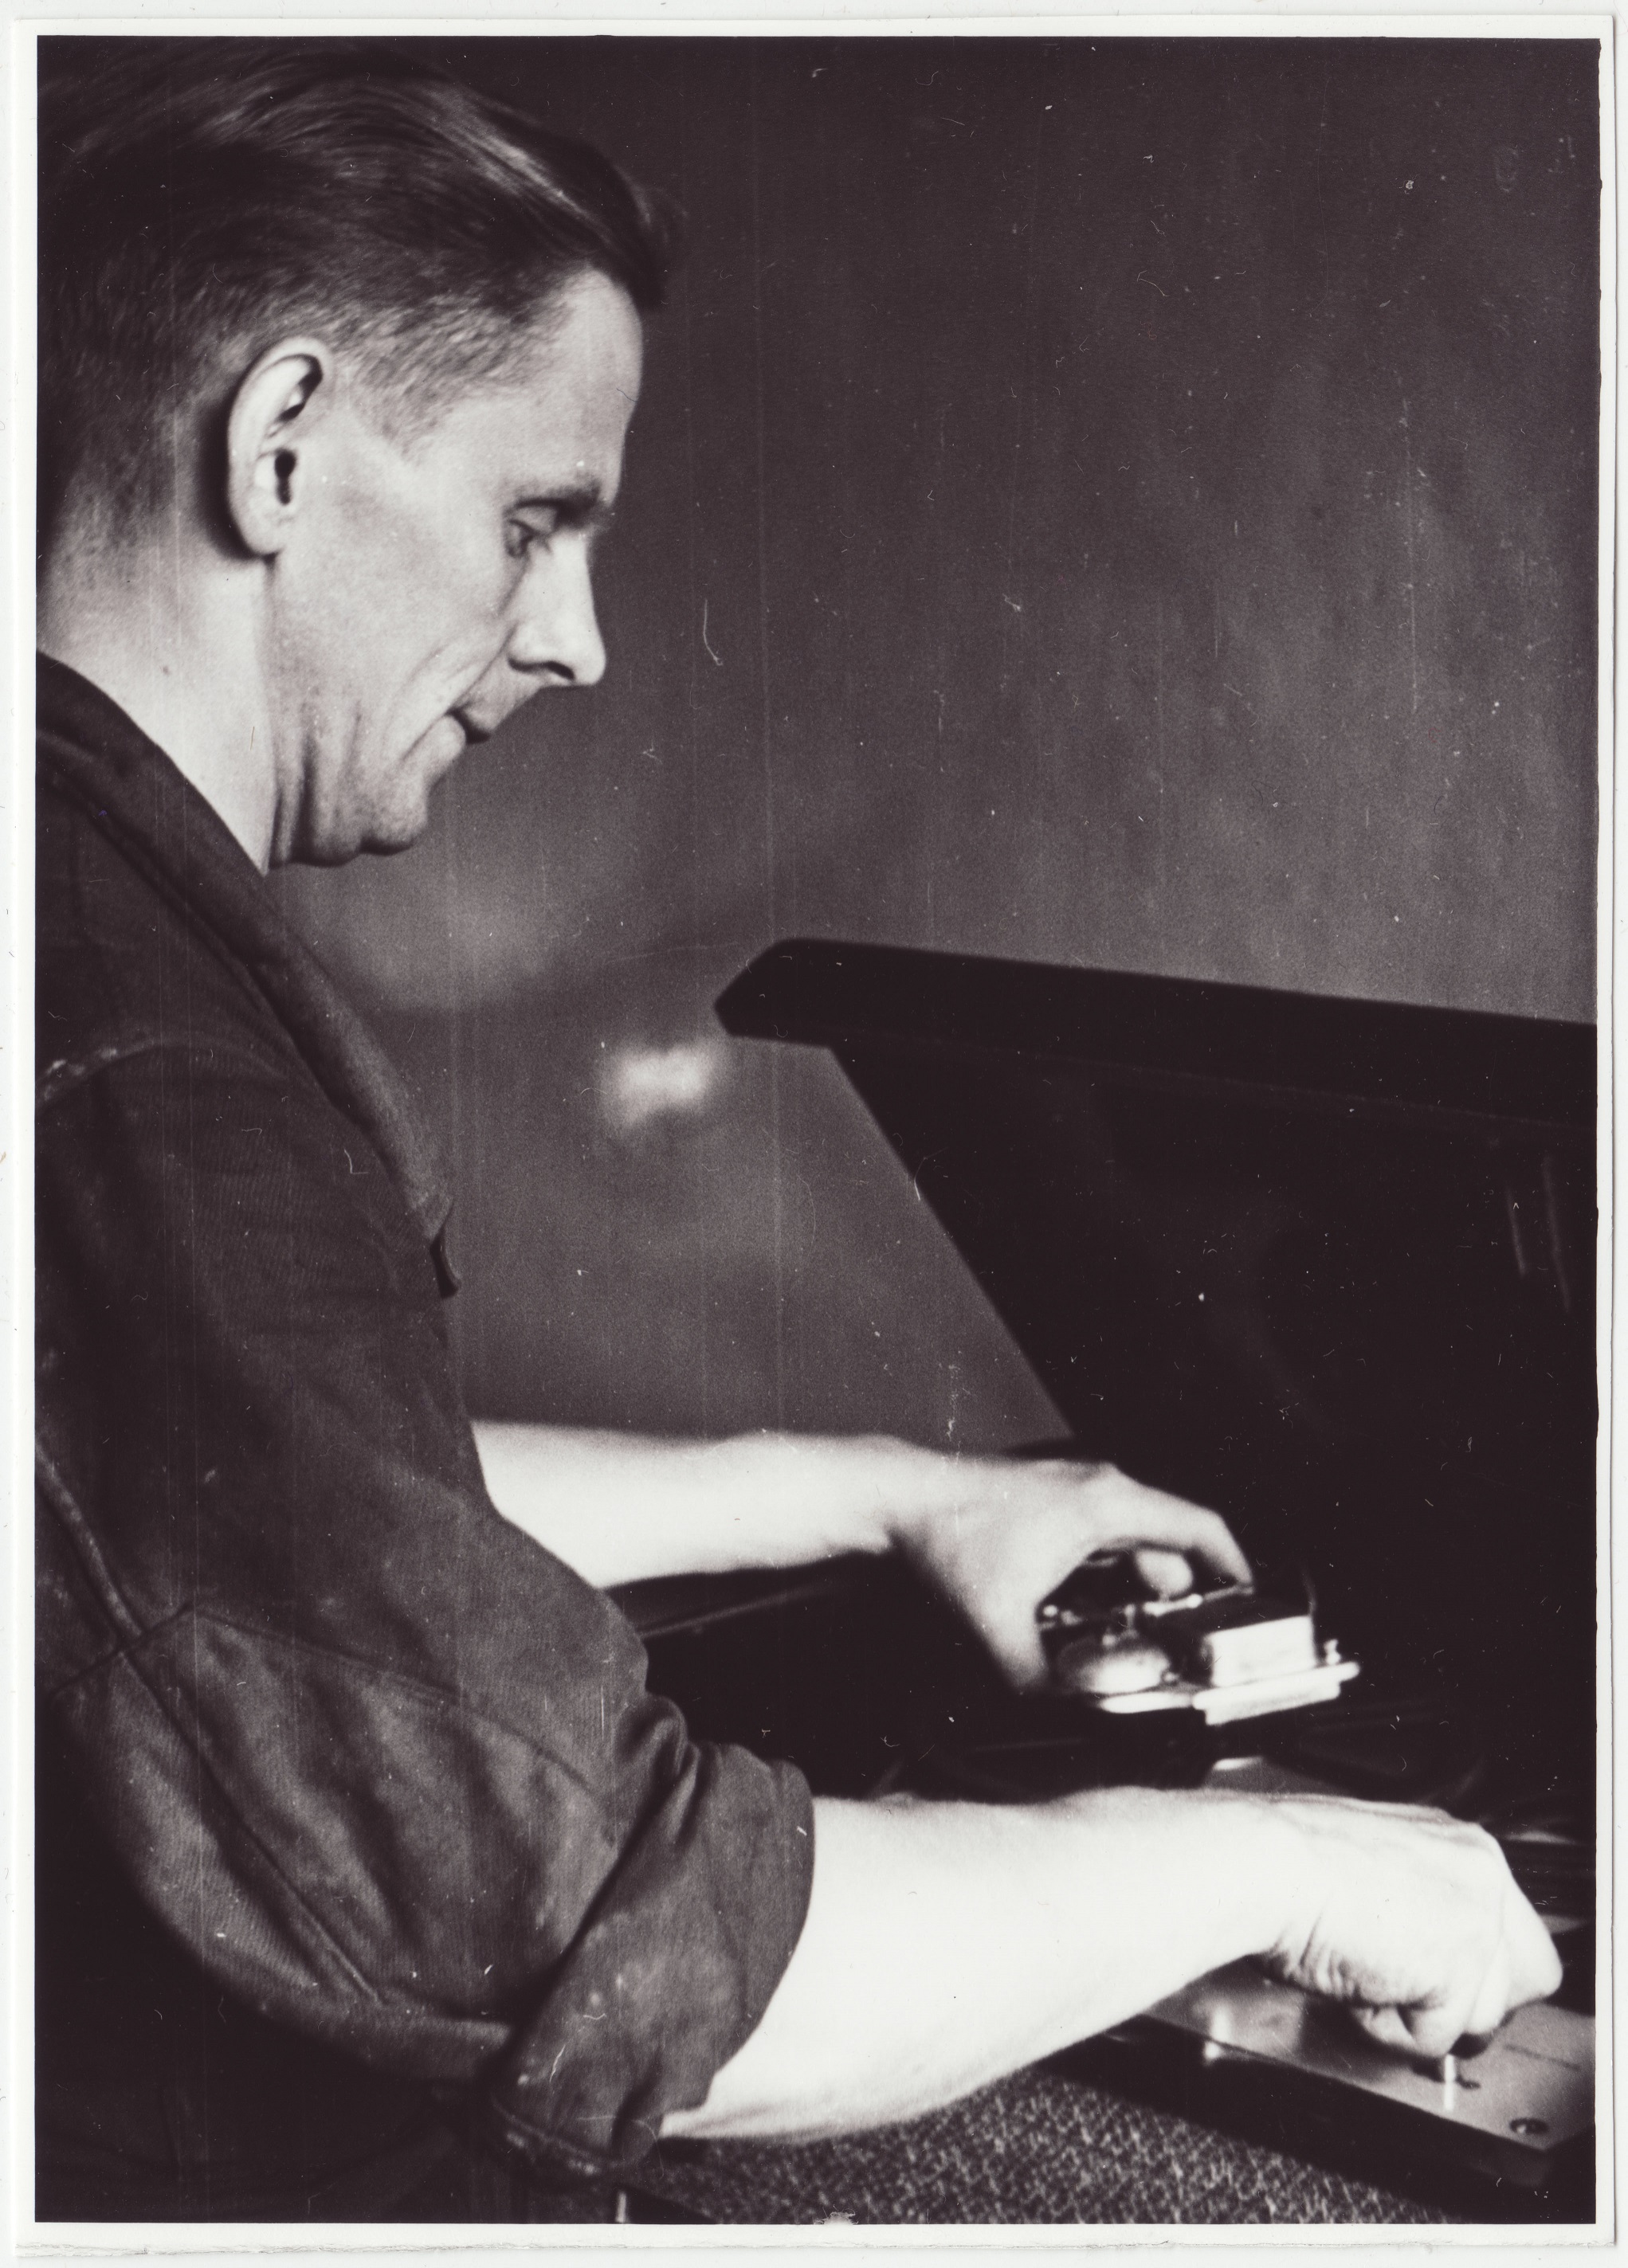 V STTK sidetehnik J. Ojasoo magnetofonile täiendusseadet monteerimas, 1954.a.